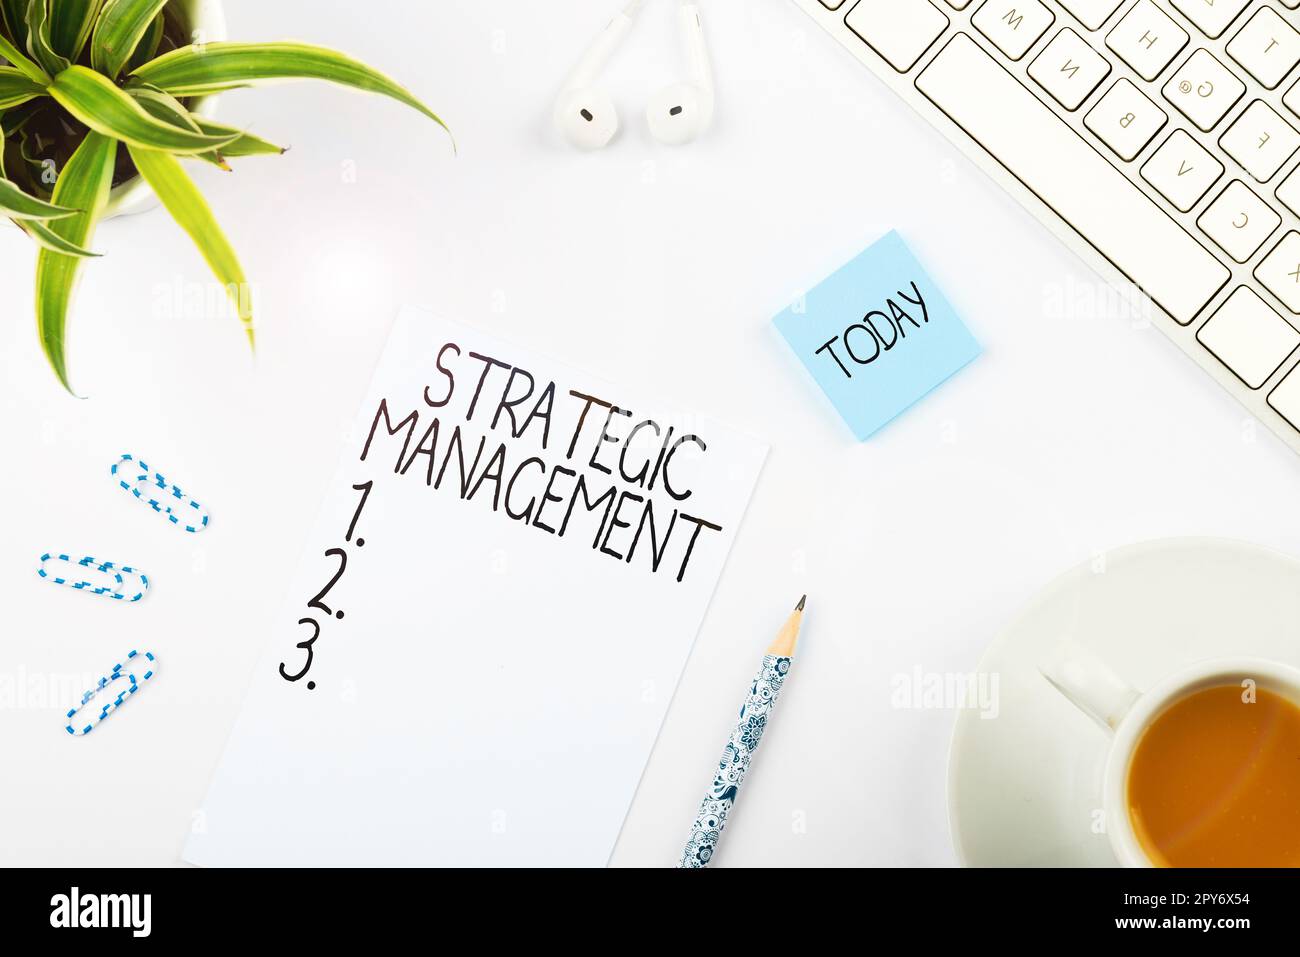 Schild mit Anzeige von Strategic Management. Formulierung des Geschäftskonzepts und Umsetzung der Hauptziele Stockfoto